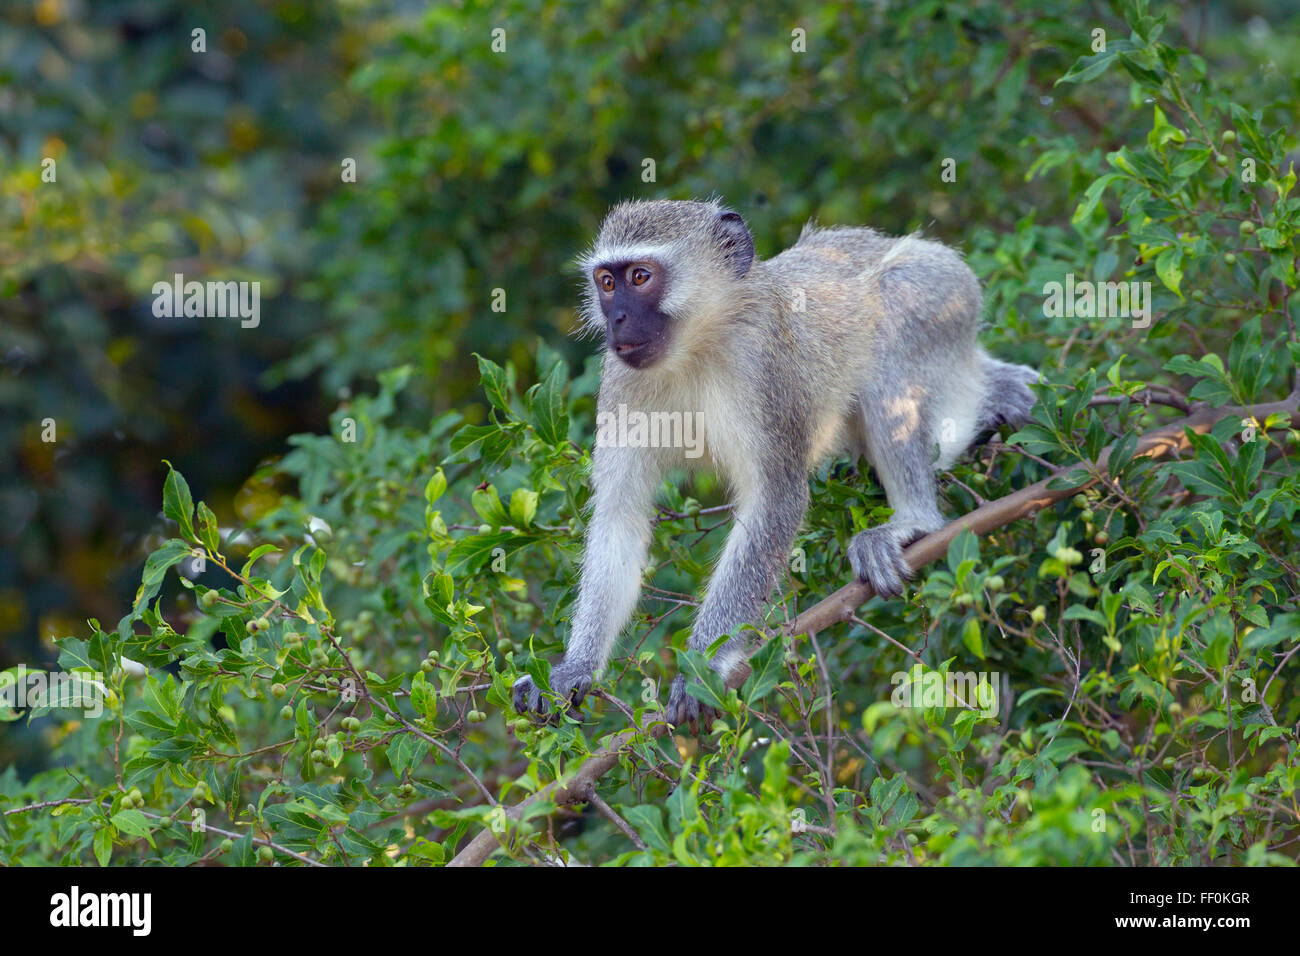 Vervet monkey Chlorocebus pygerythrus in garden shrubbery Stock Photo